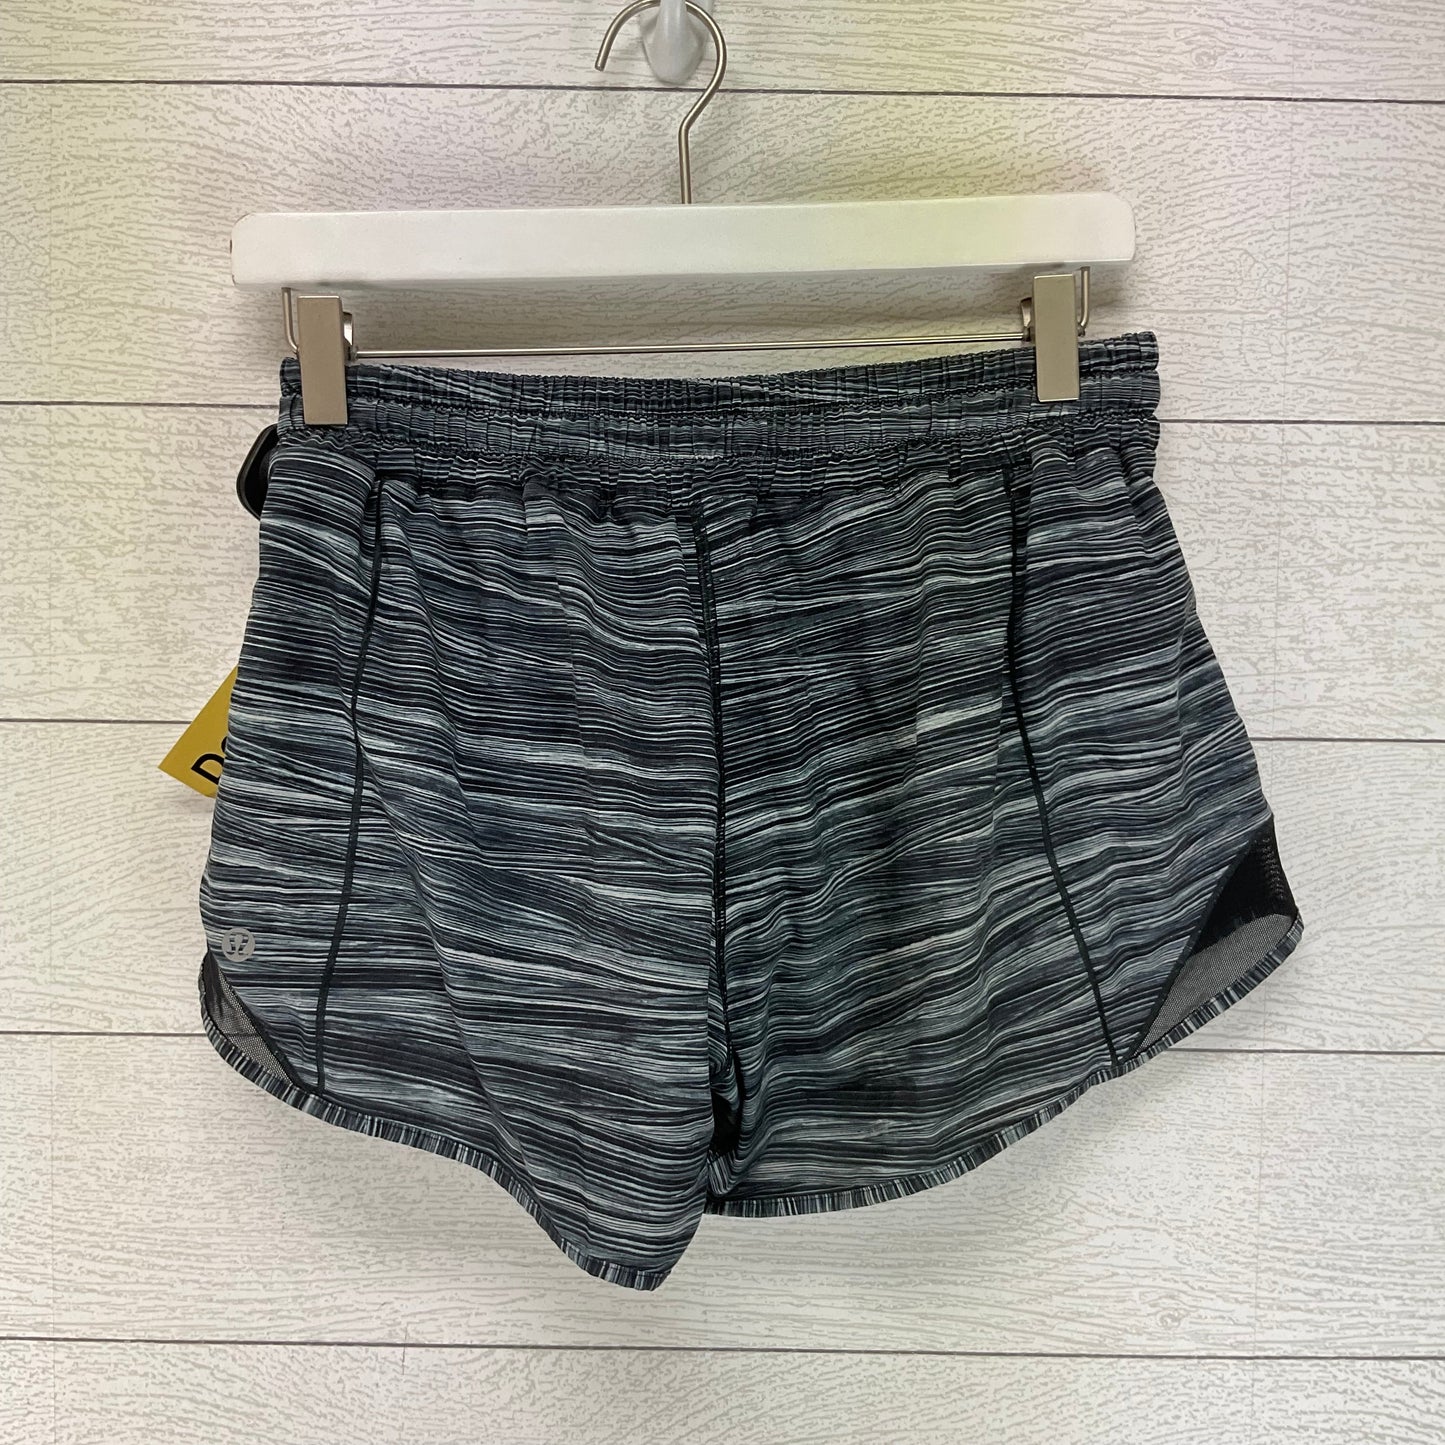 Grey Athletic Shorts Lululemon, Size 8